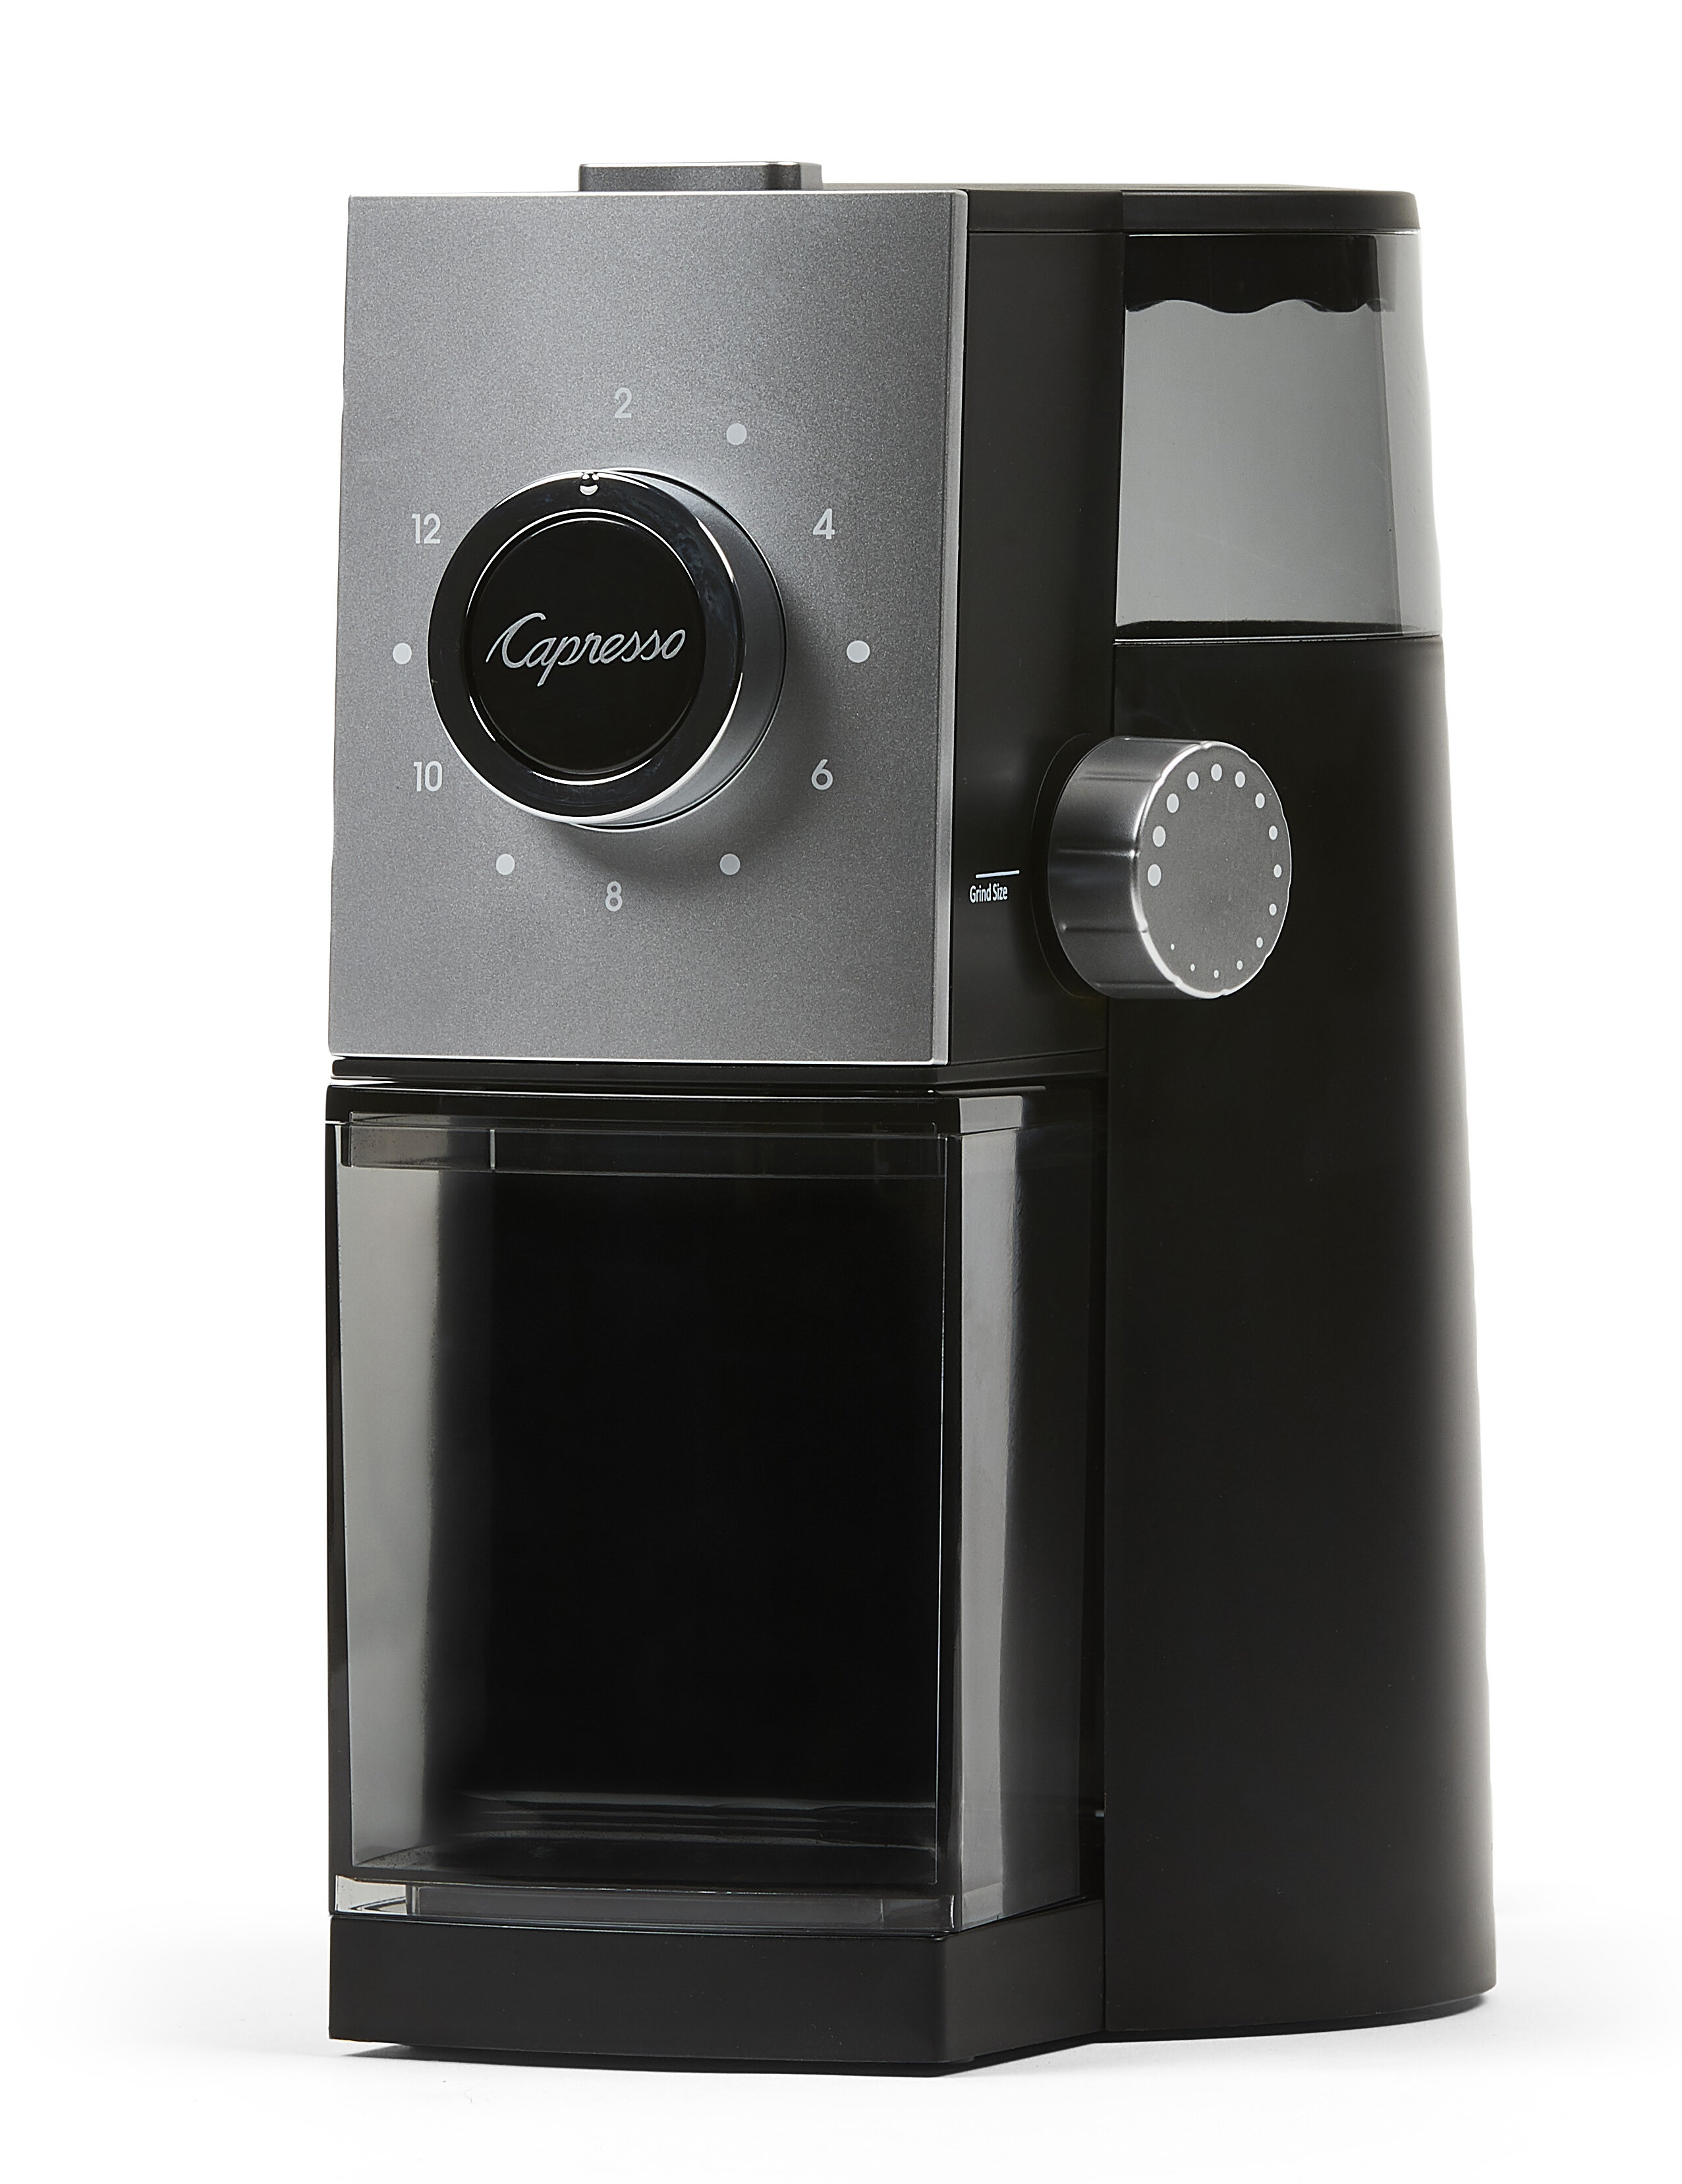 https://assets.wfcdn.com/im/36854144/compr-r85/9159/91597672/capresso-grind-select-coffee-grinder.jpg